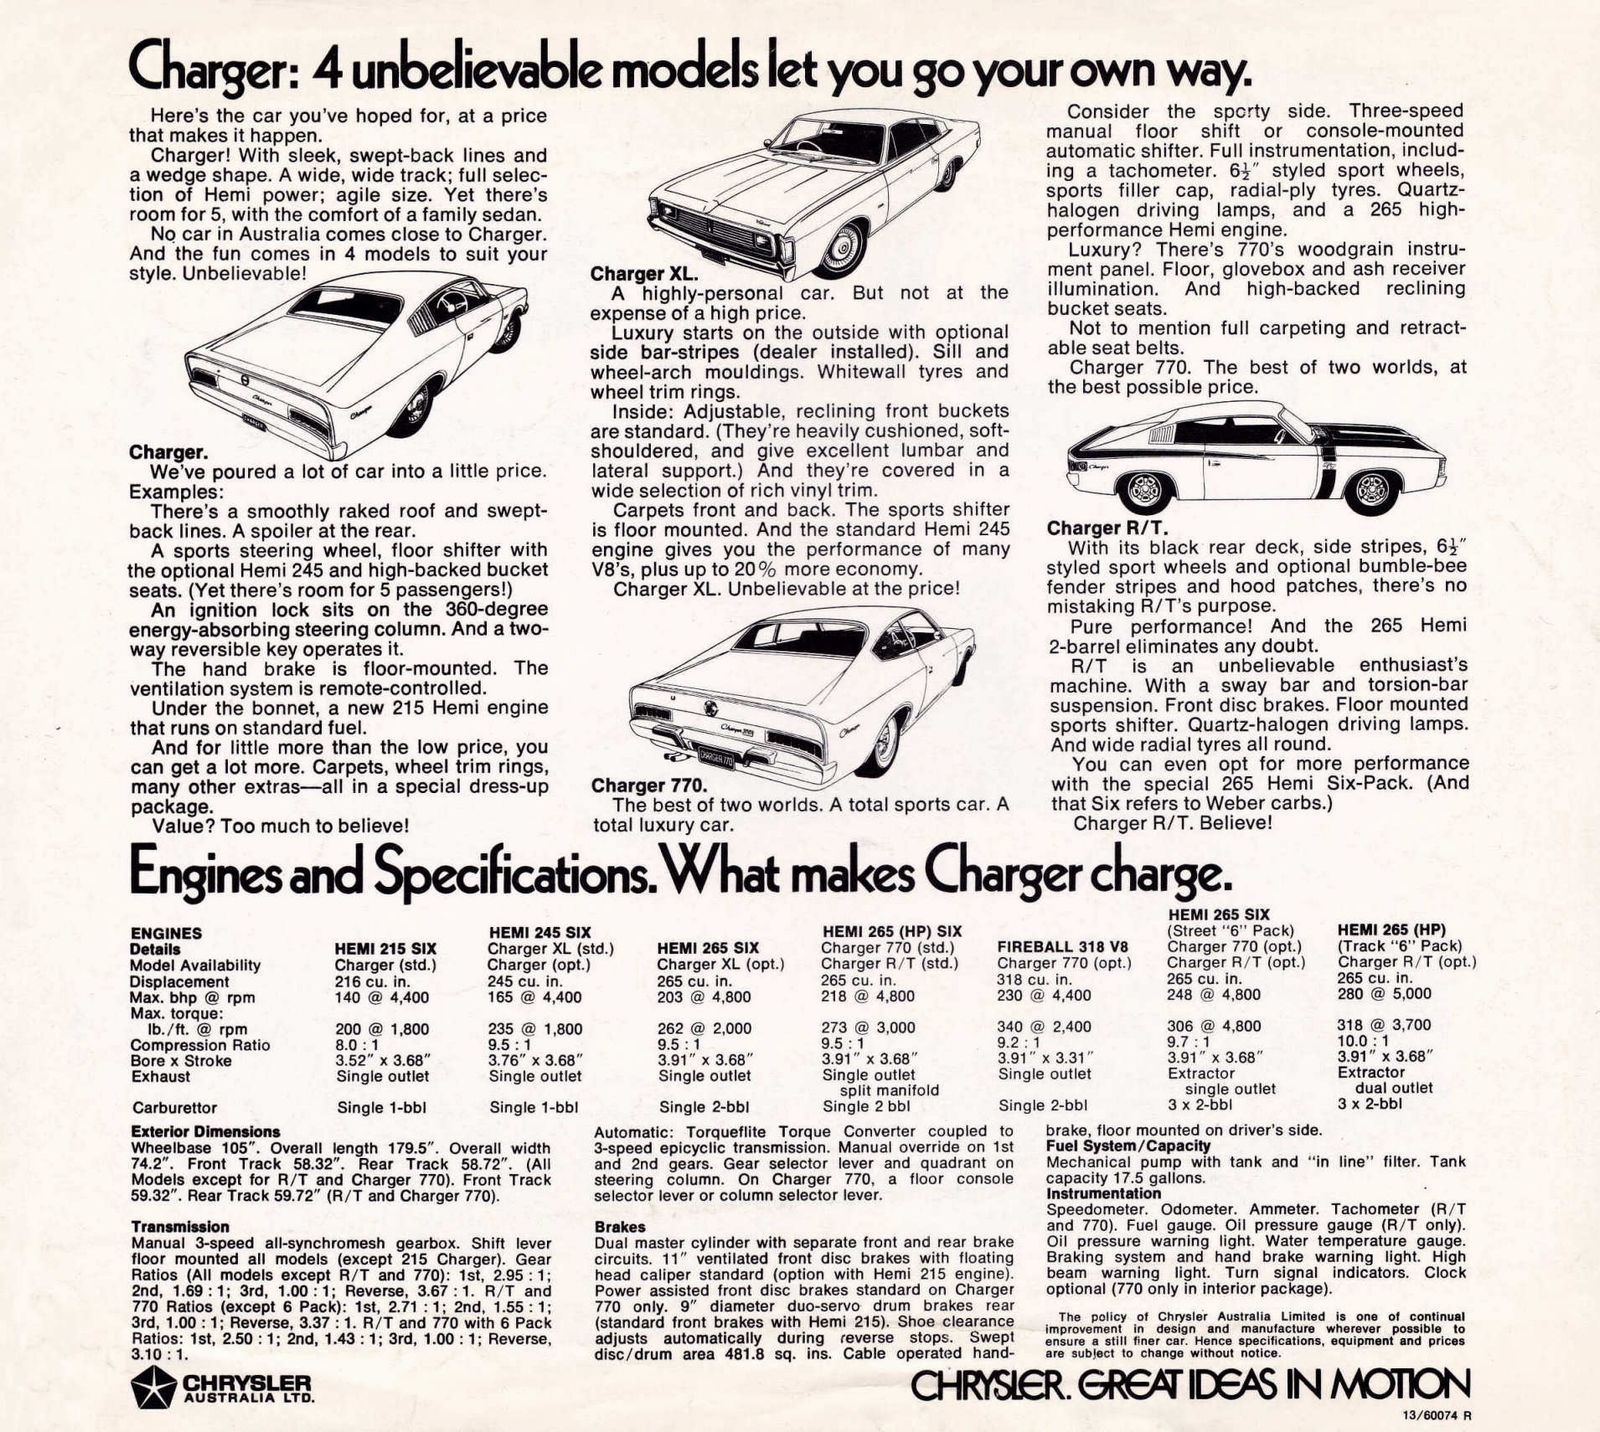 n_1971 Chrysler VH Valiant Charger Poster-02.jpg